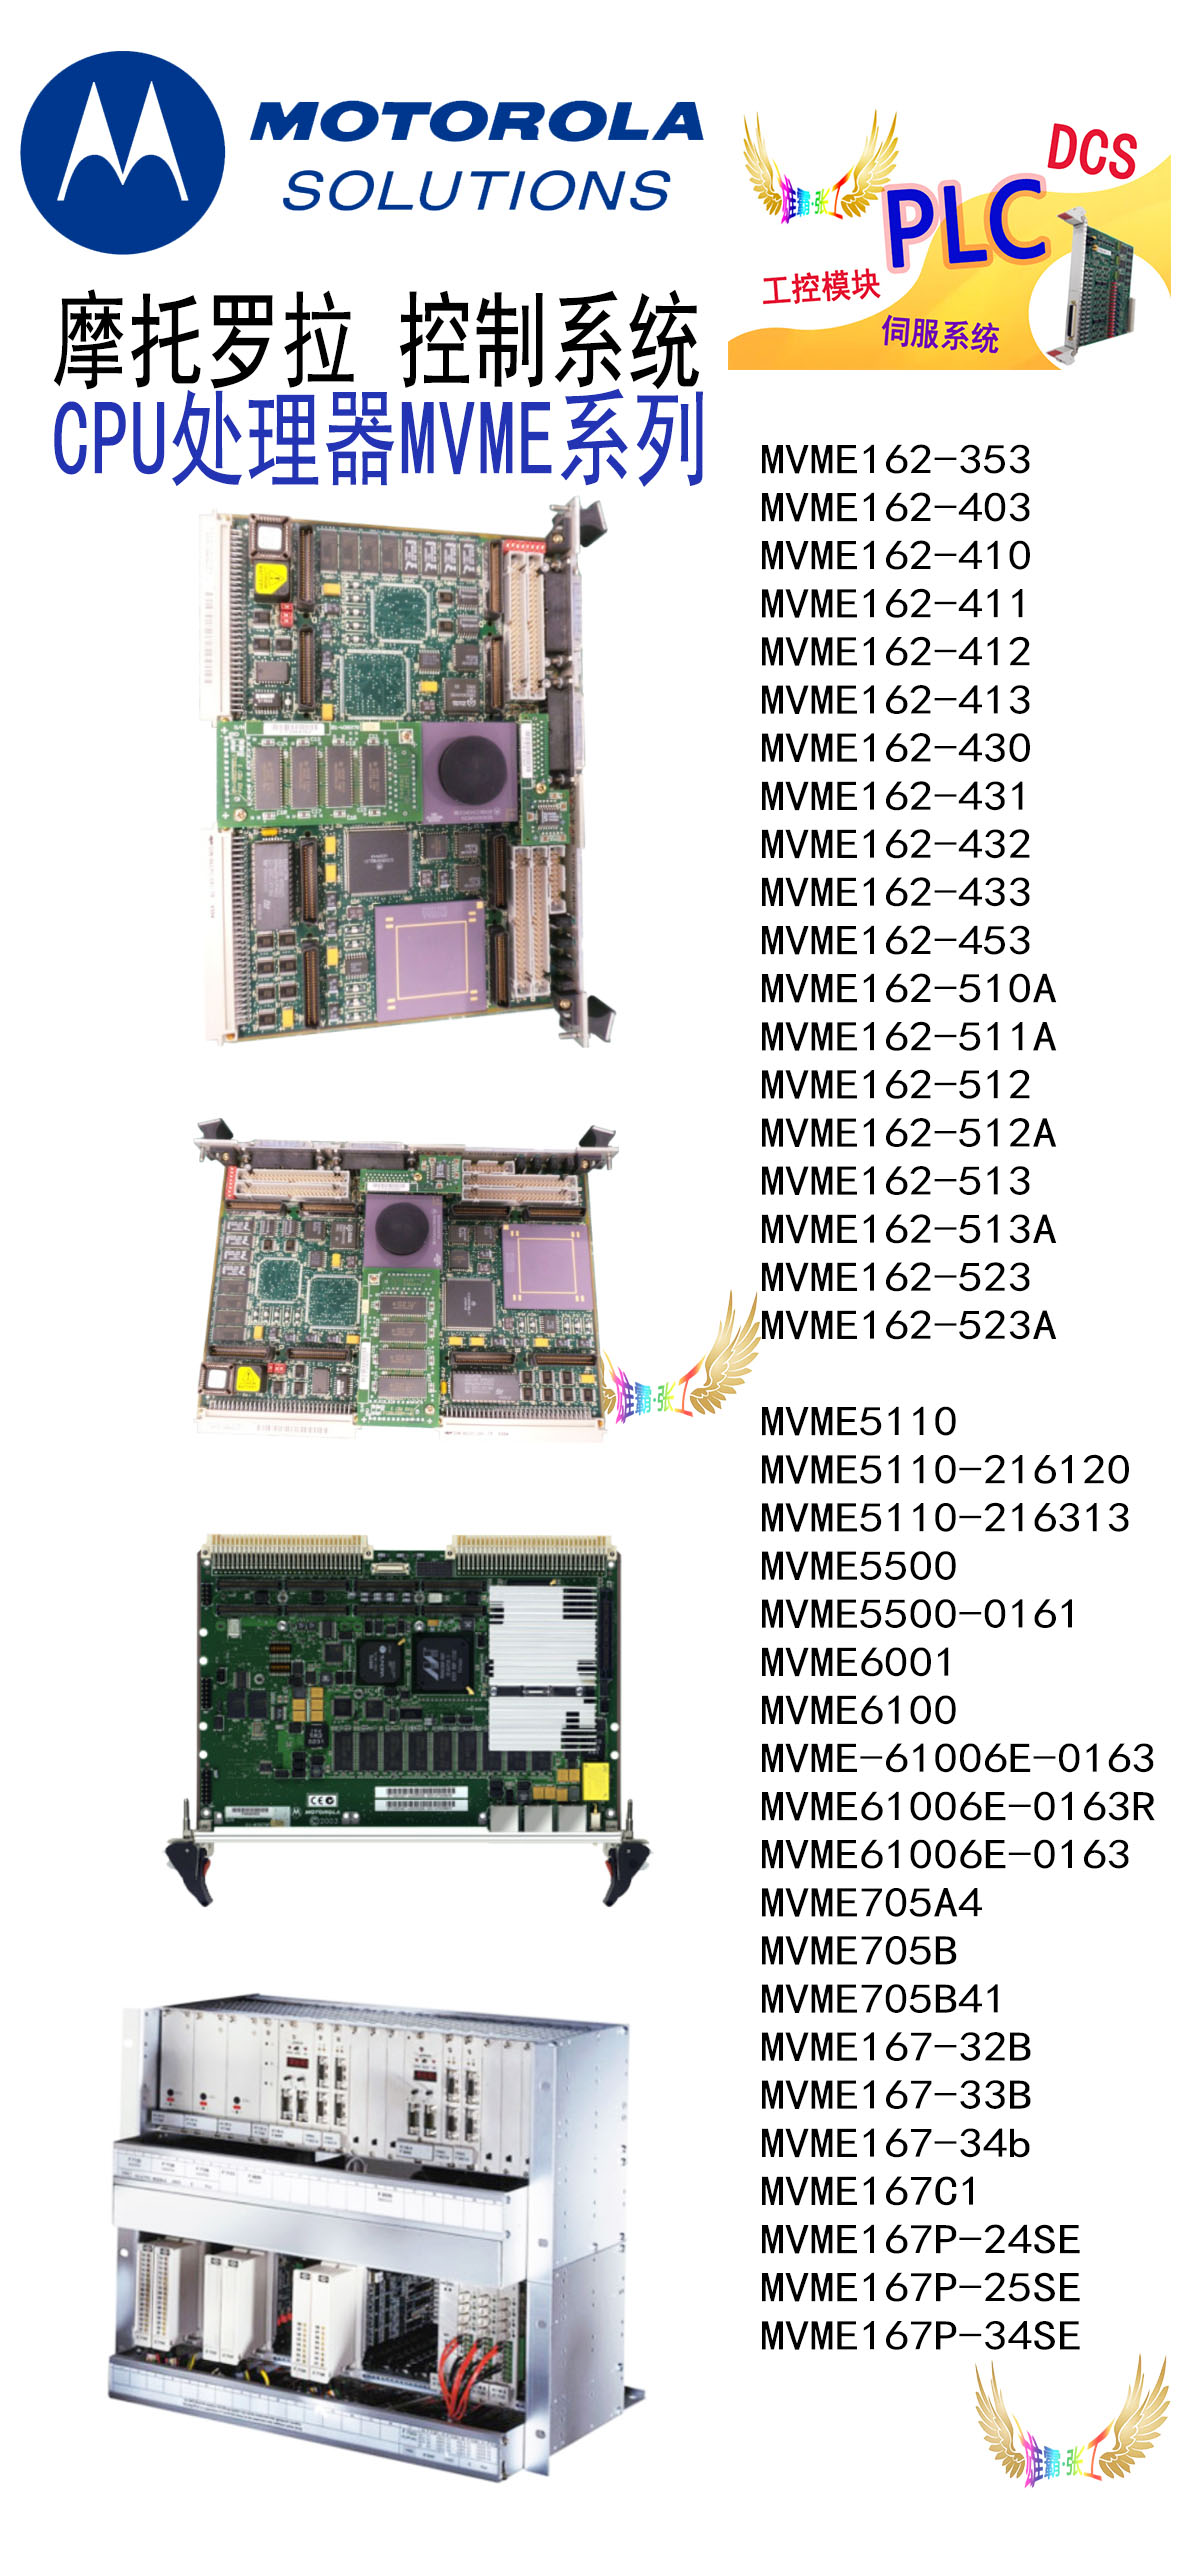 摩托罗拉处理器模块 MVME-147A VMIVME系列 Motorola 